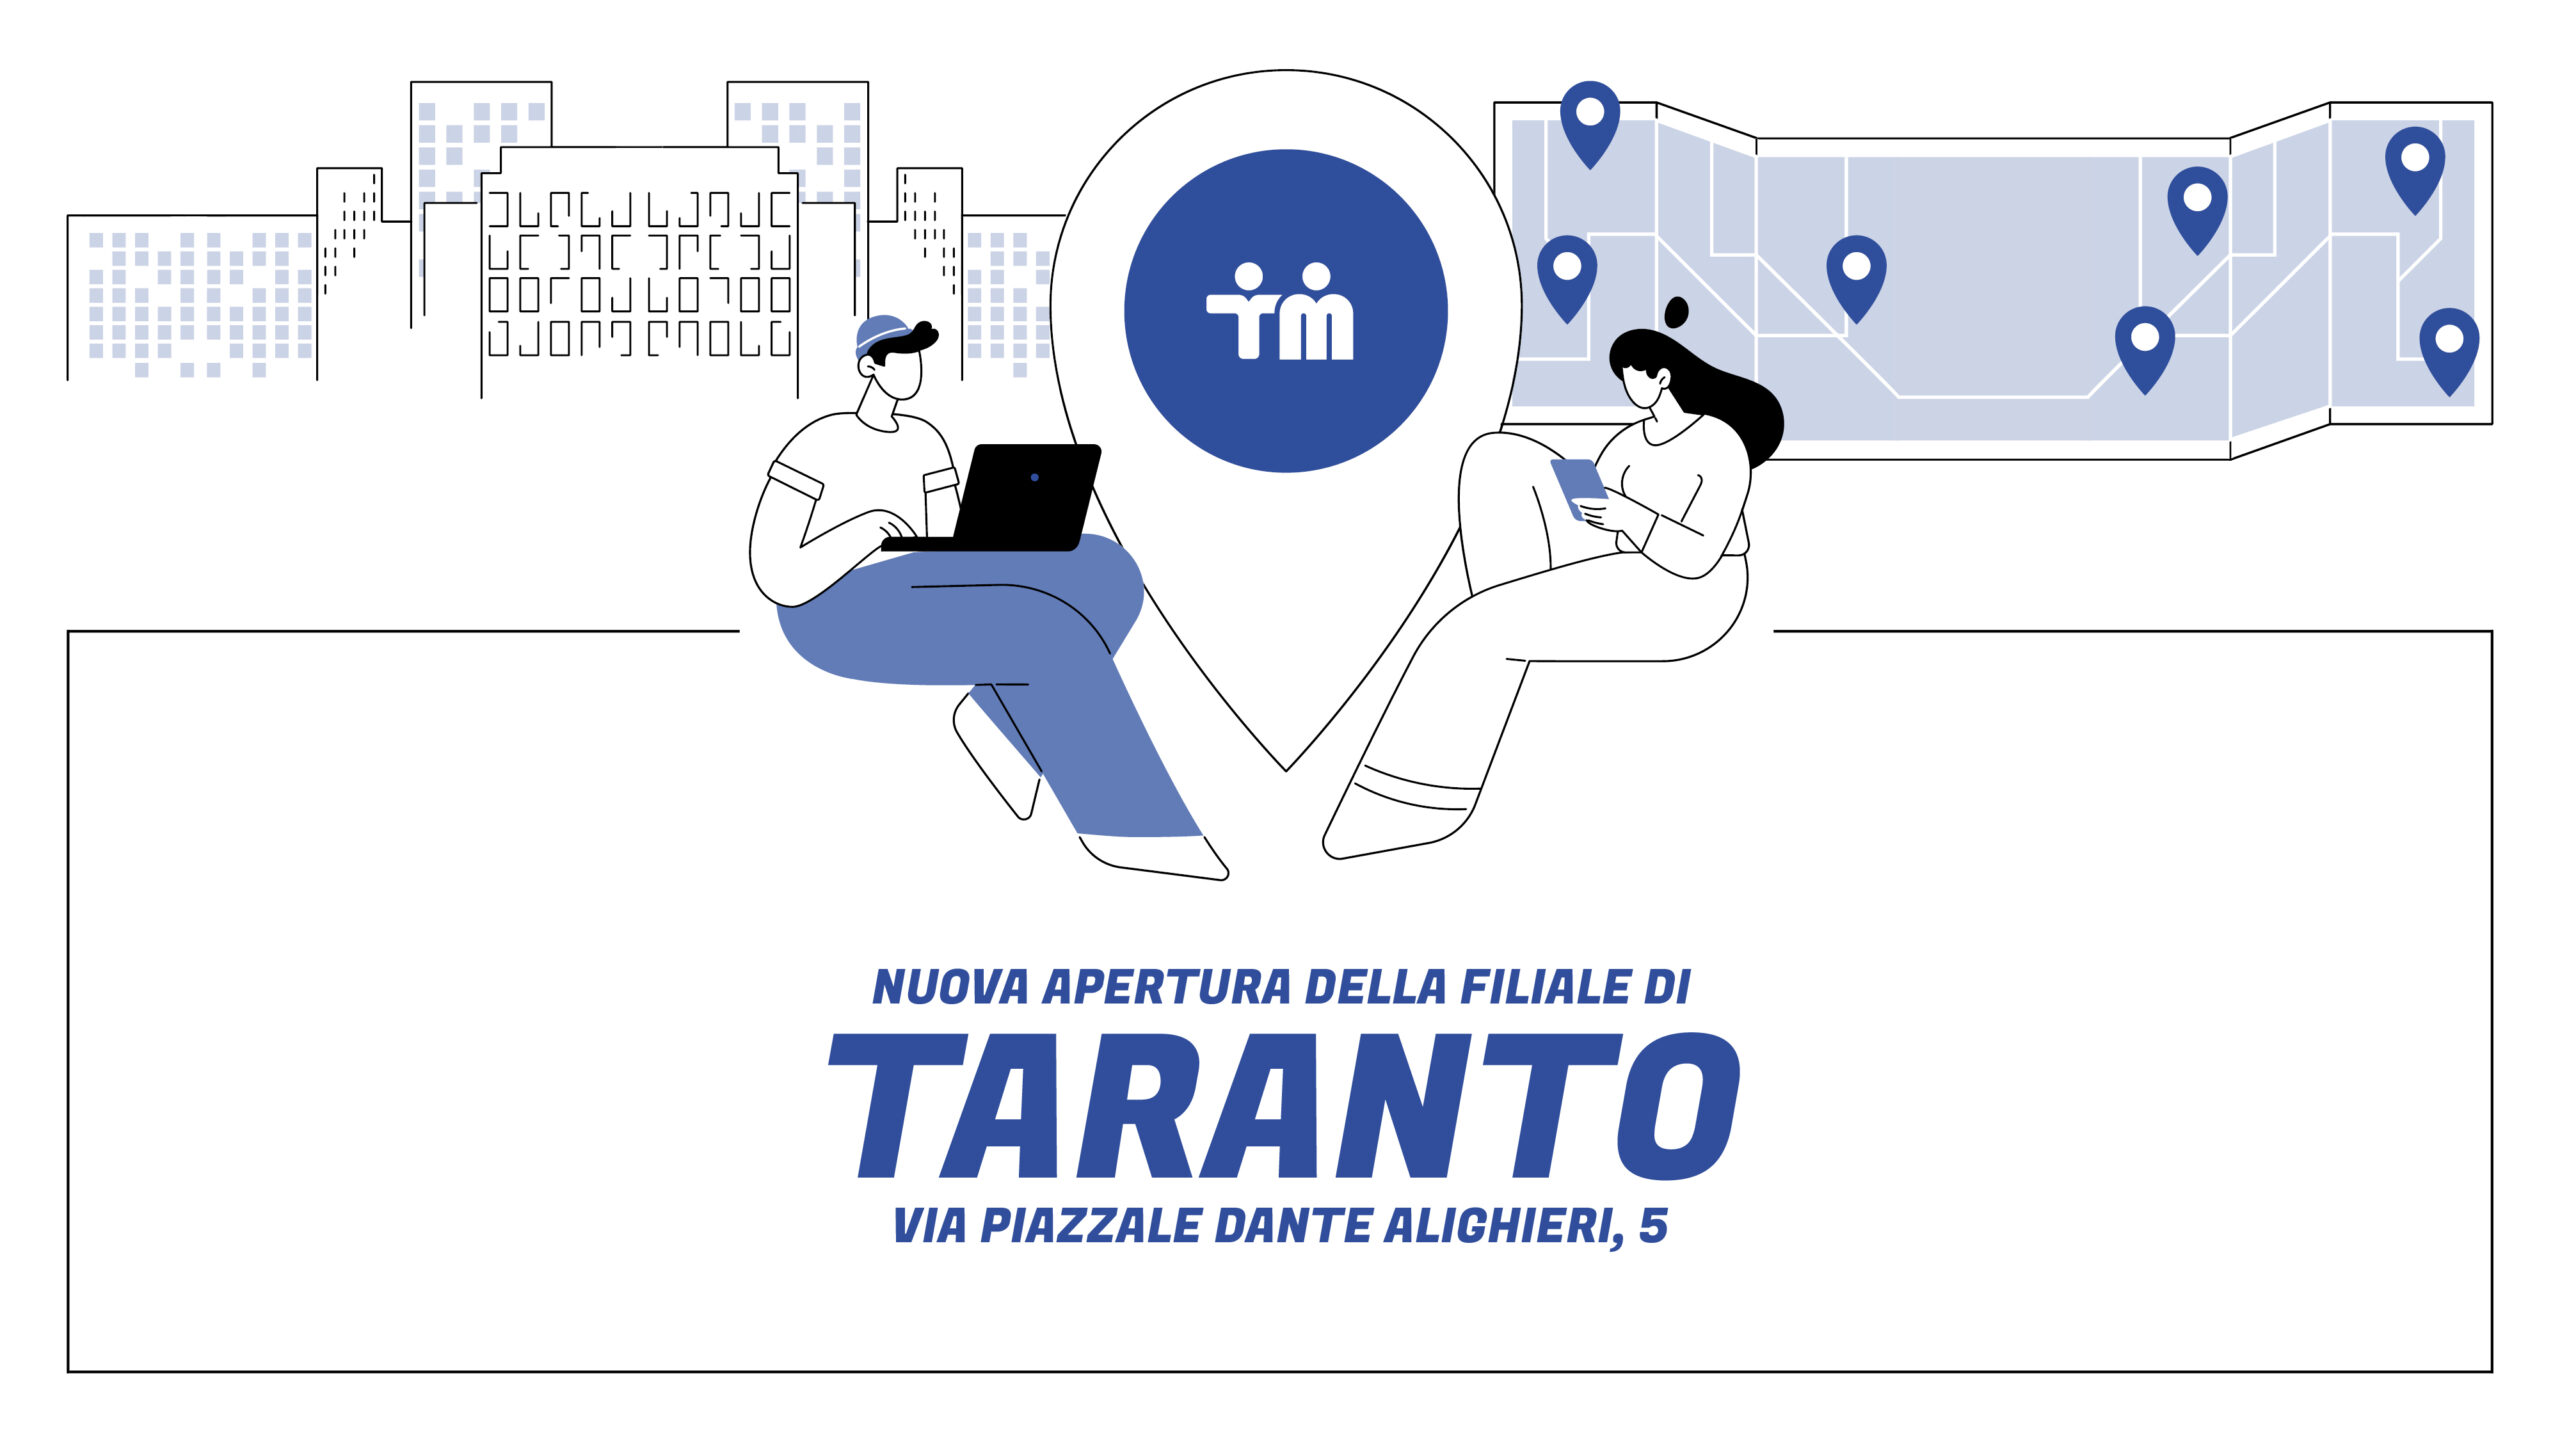 Nuova apertura filiale di Taranto